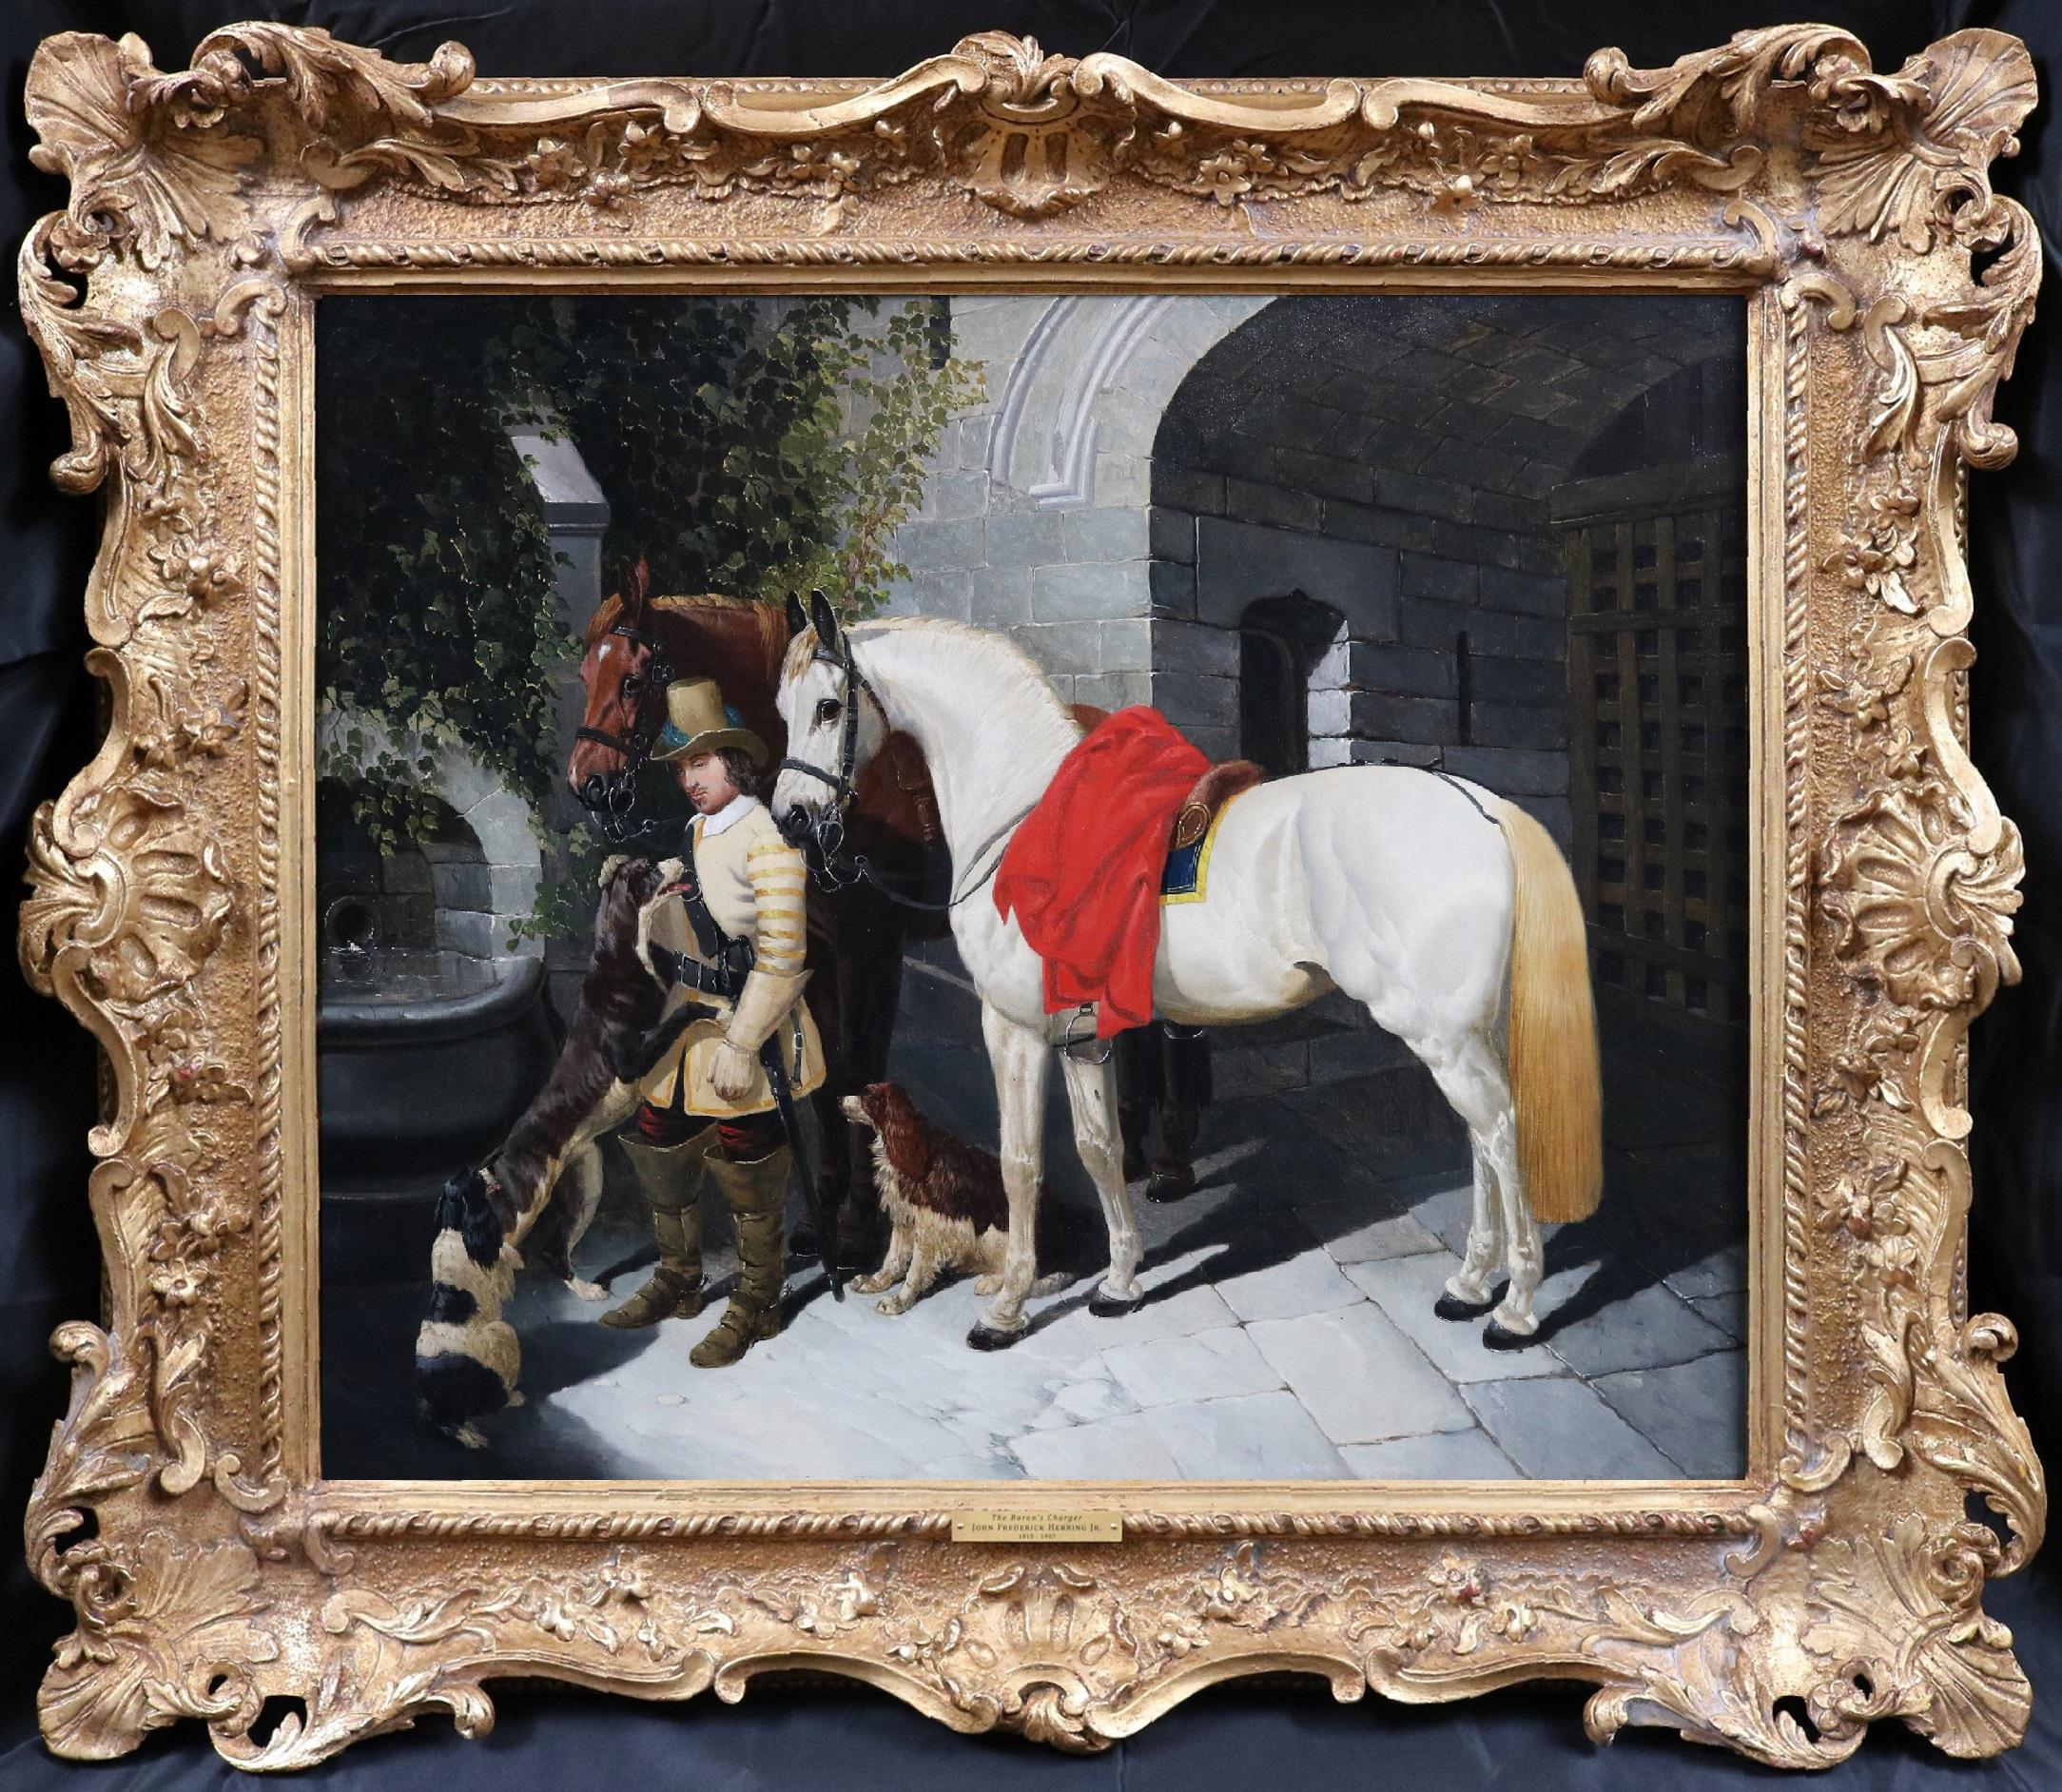 The Baron's Charger – Ölgemälde englischer Soldat und Schlachtpferd – 19. Jahrhundert – Painting von John Frederick Herring Jr.